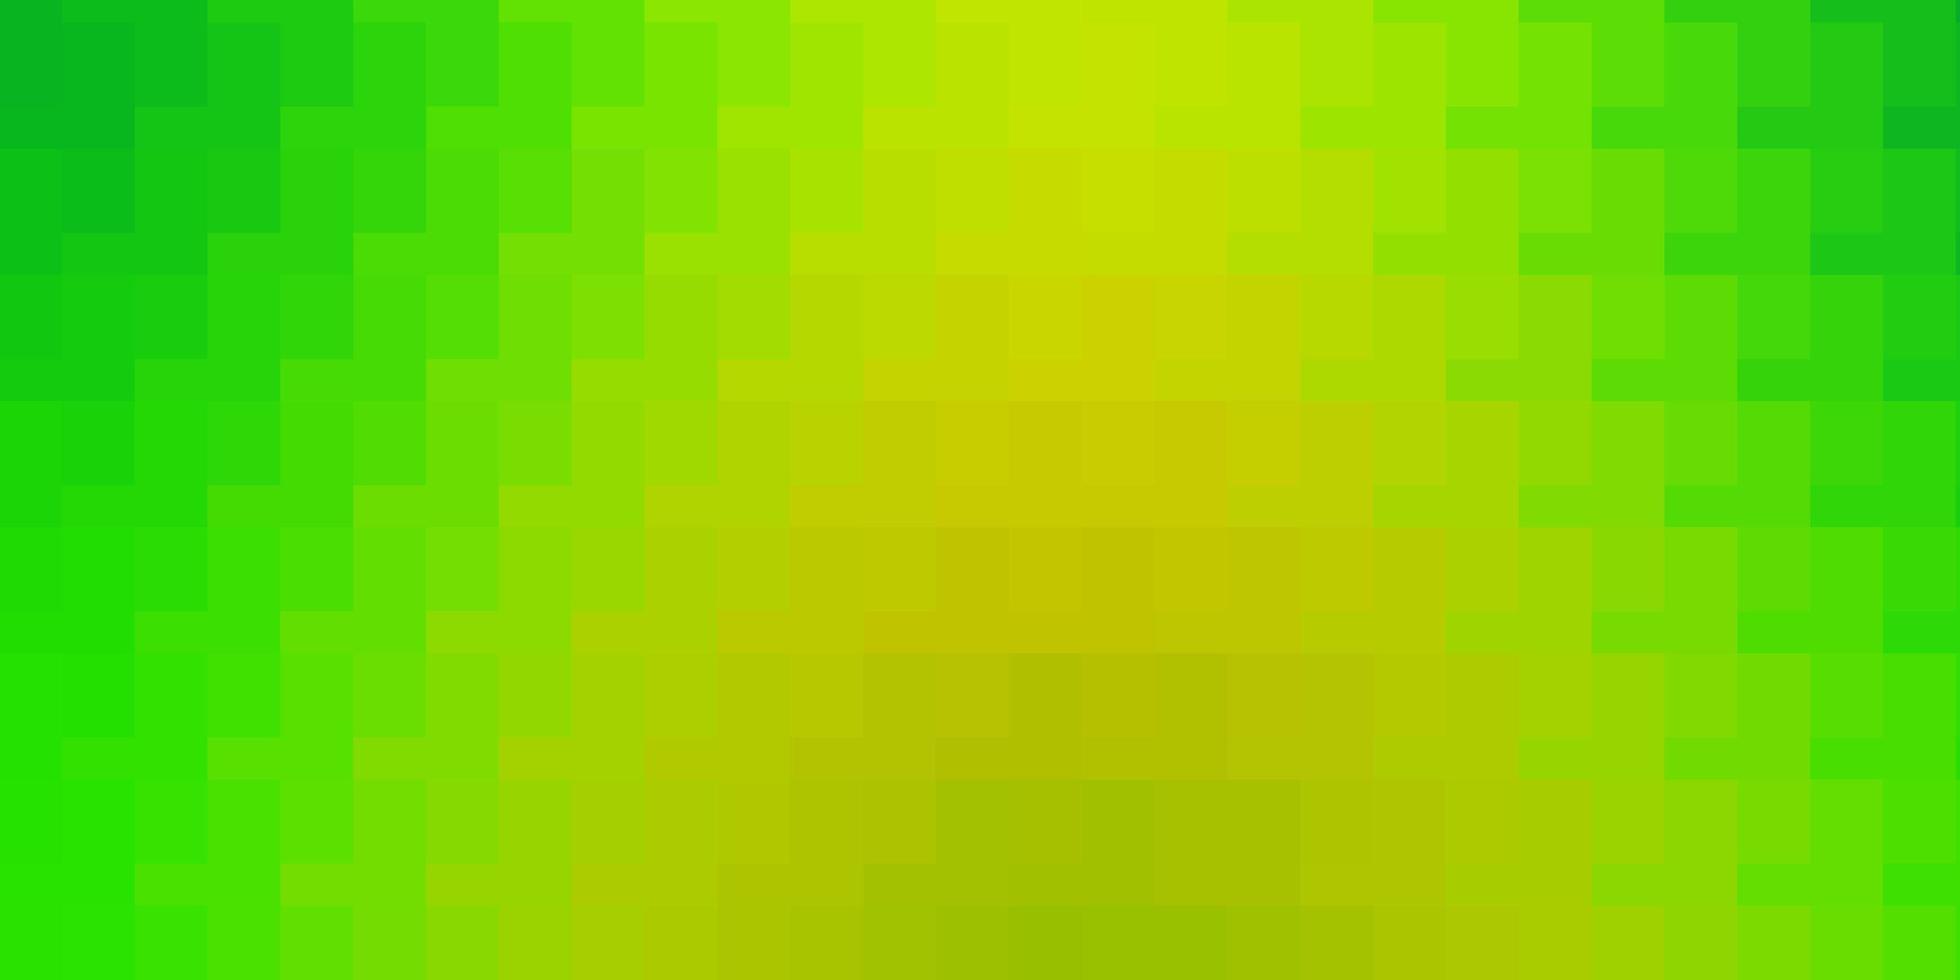 texture vettoriale giallo verde chiaro in stile rettangolare design moderno con rettangoli in stile astratto modello per opuscoli aziendali volantini